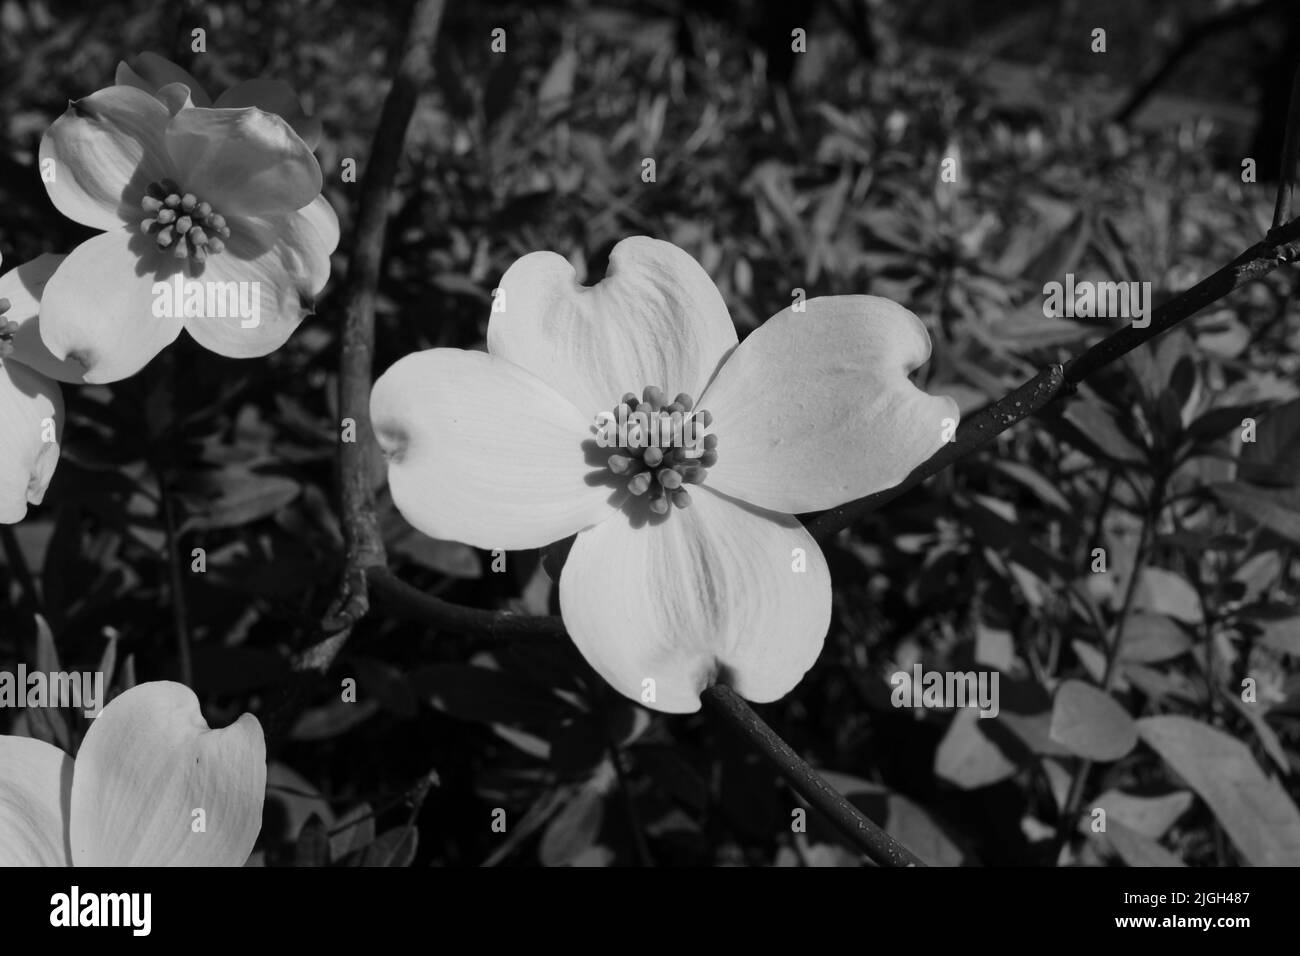 Un'immagine in scala di grigi di fiori di dogwood fioriti sul terreno Foto Stock